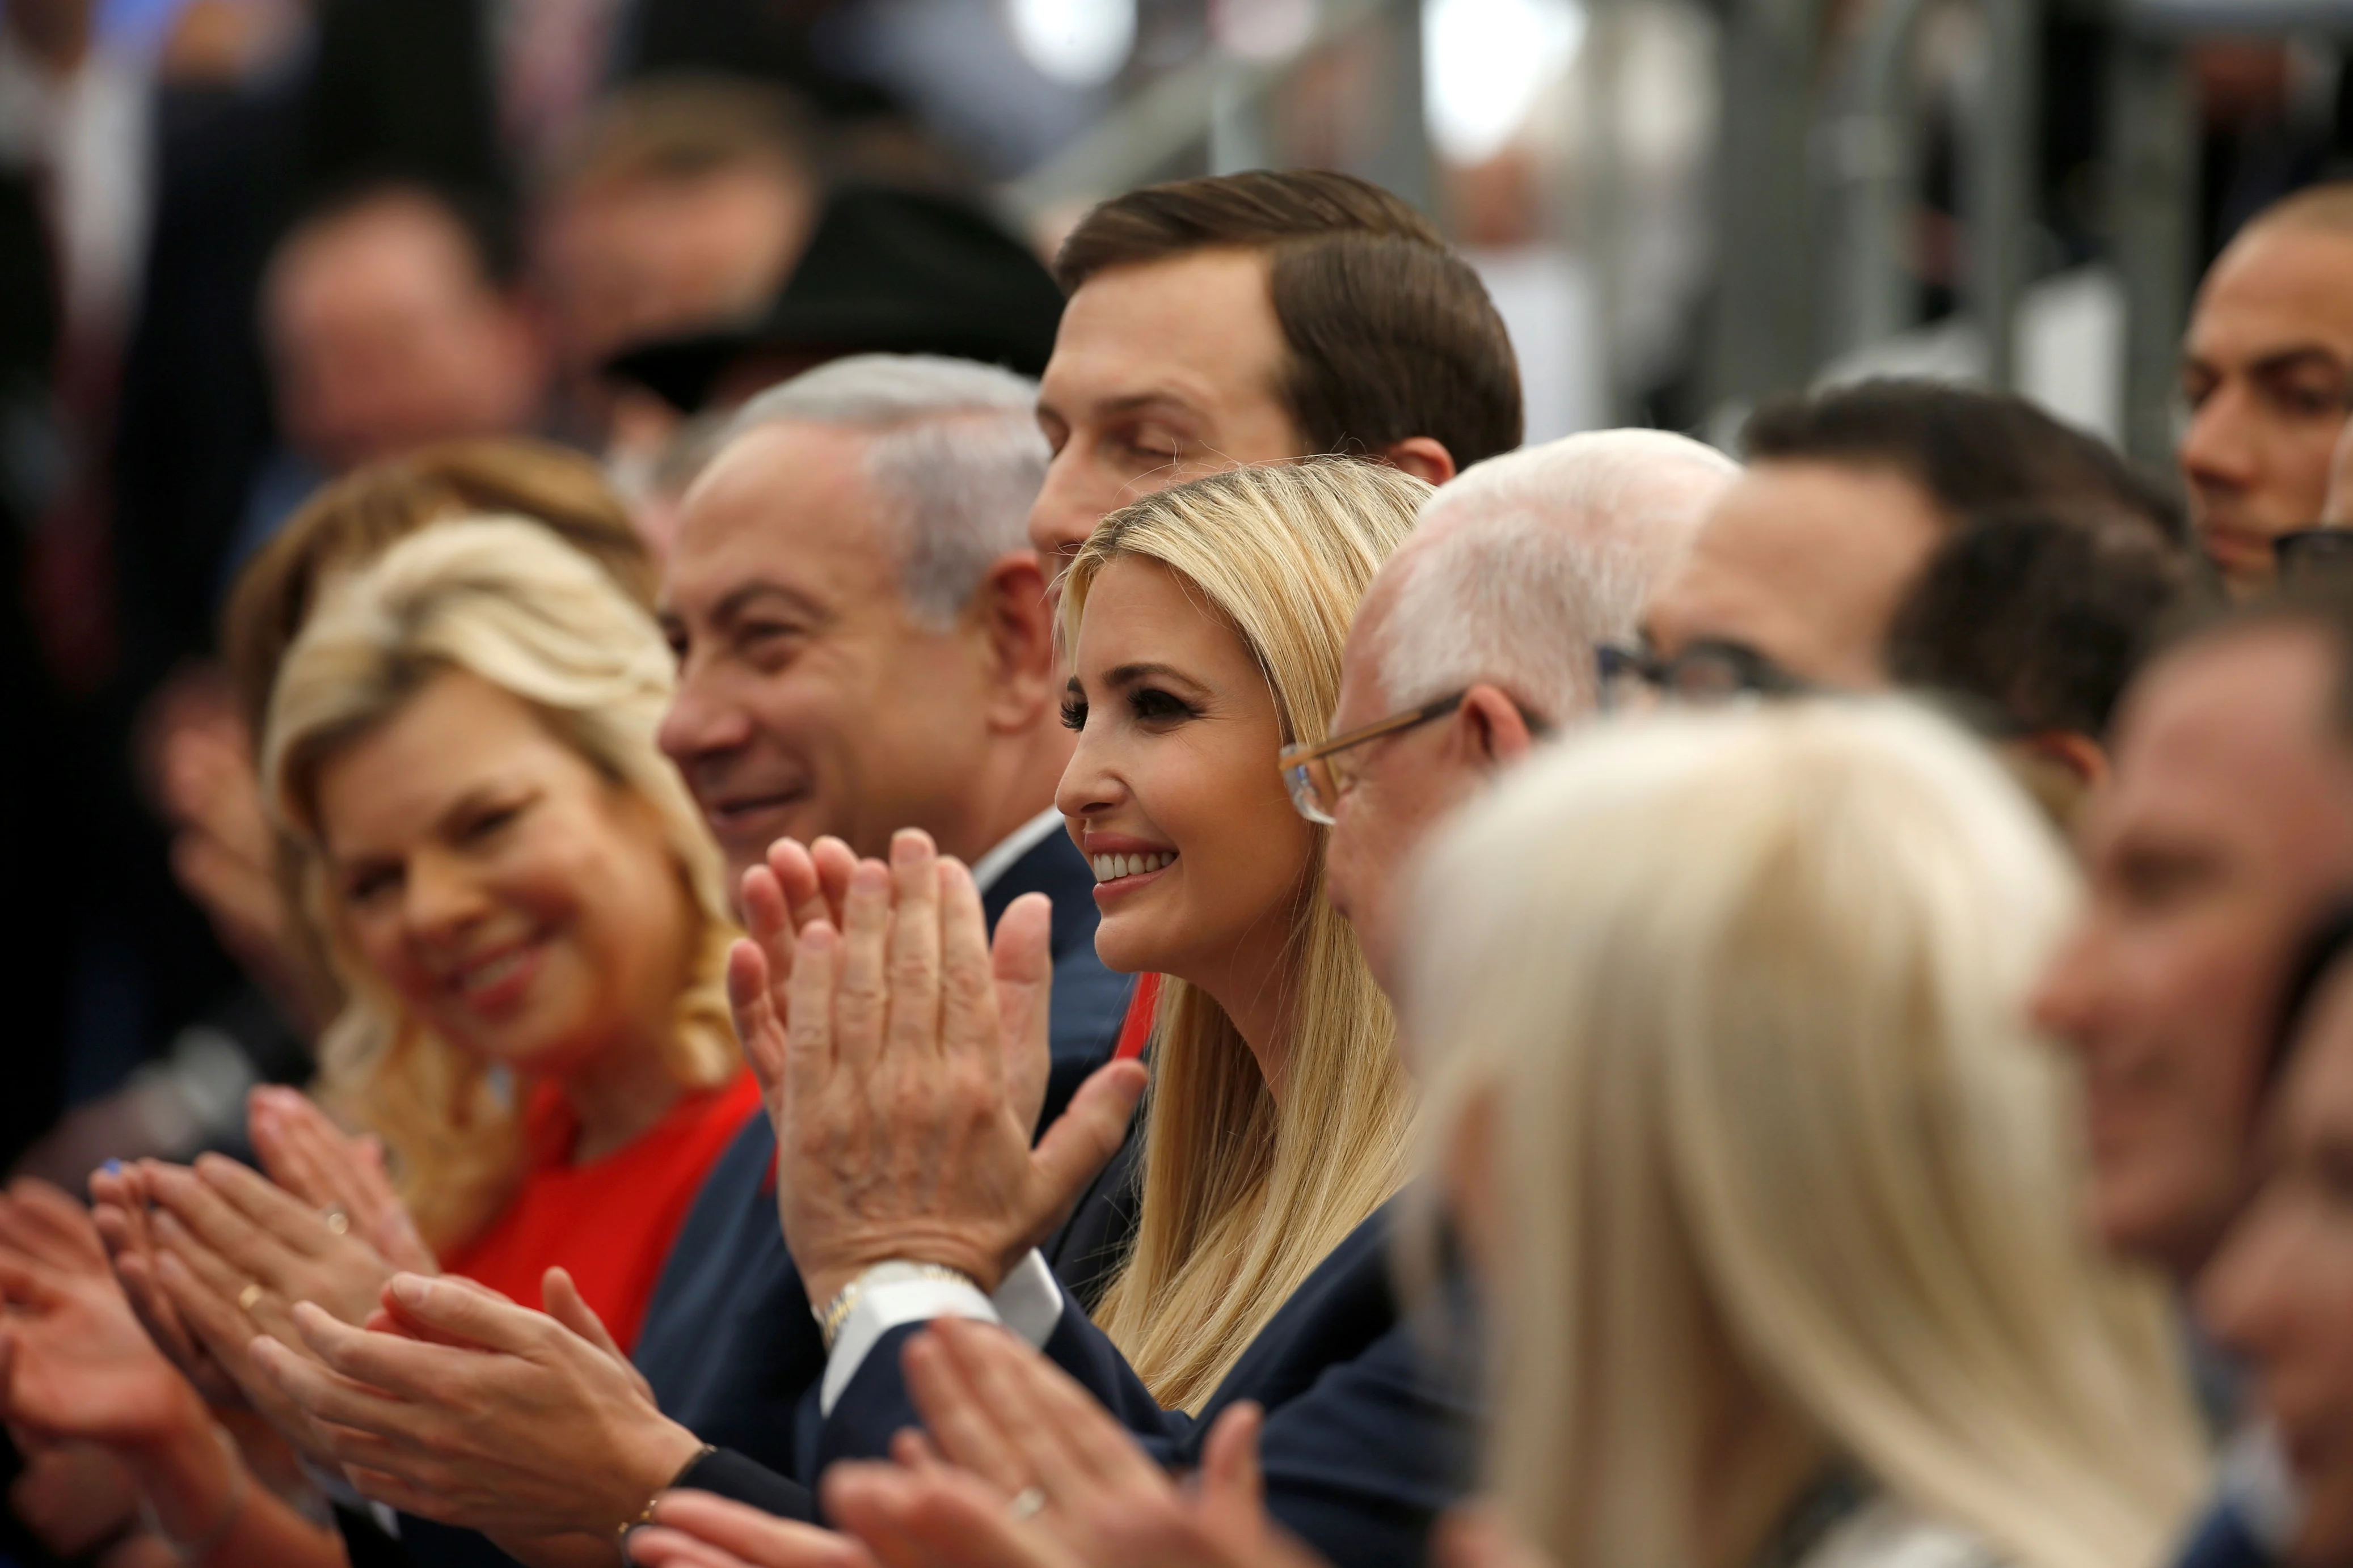 נתניהו עם רעייתו שרה, איוונקה טראמפ וג'אדר קושנר בטקס פתיחת שגרירות ארה"ב בירושלים